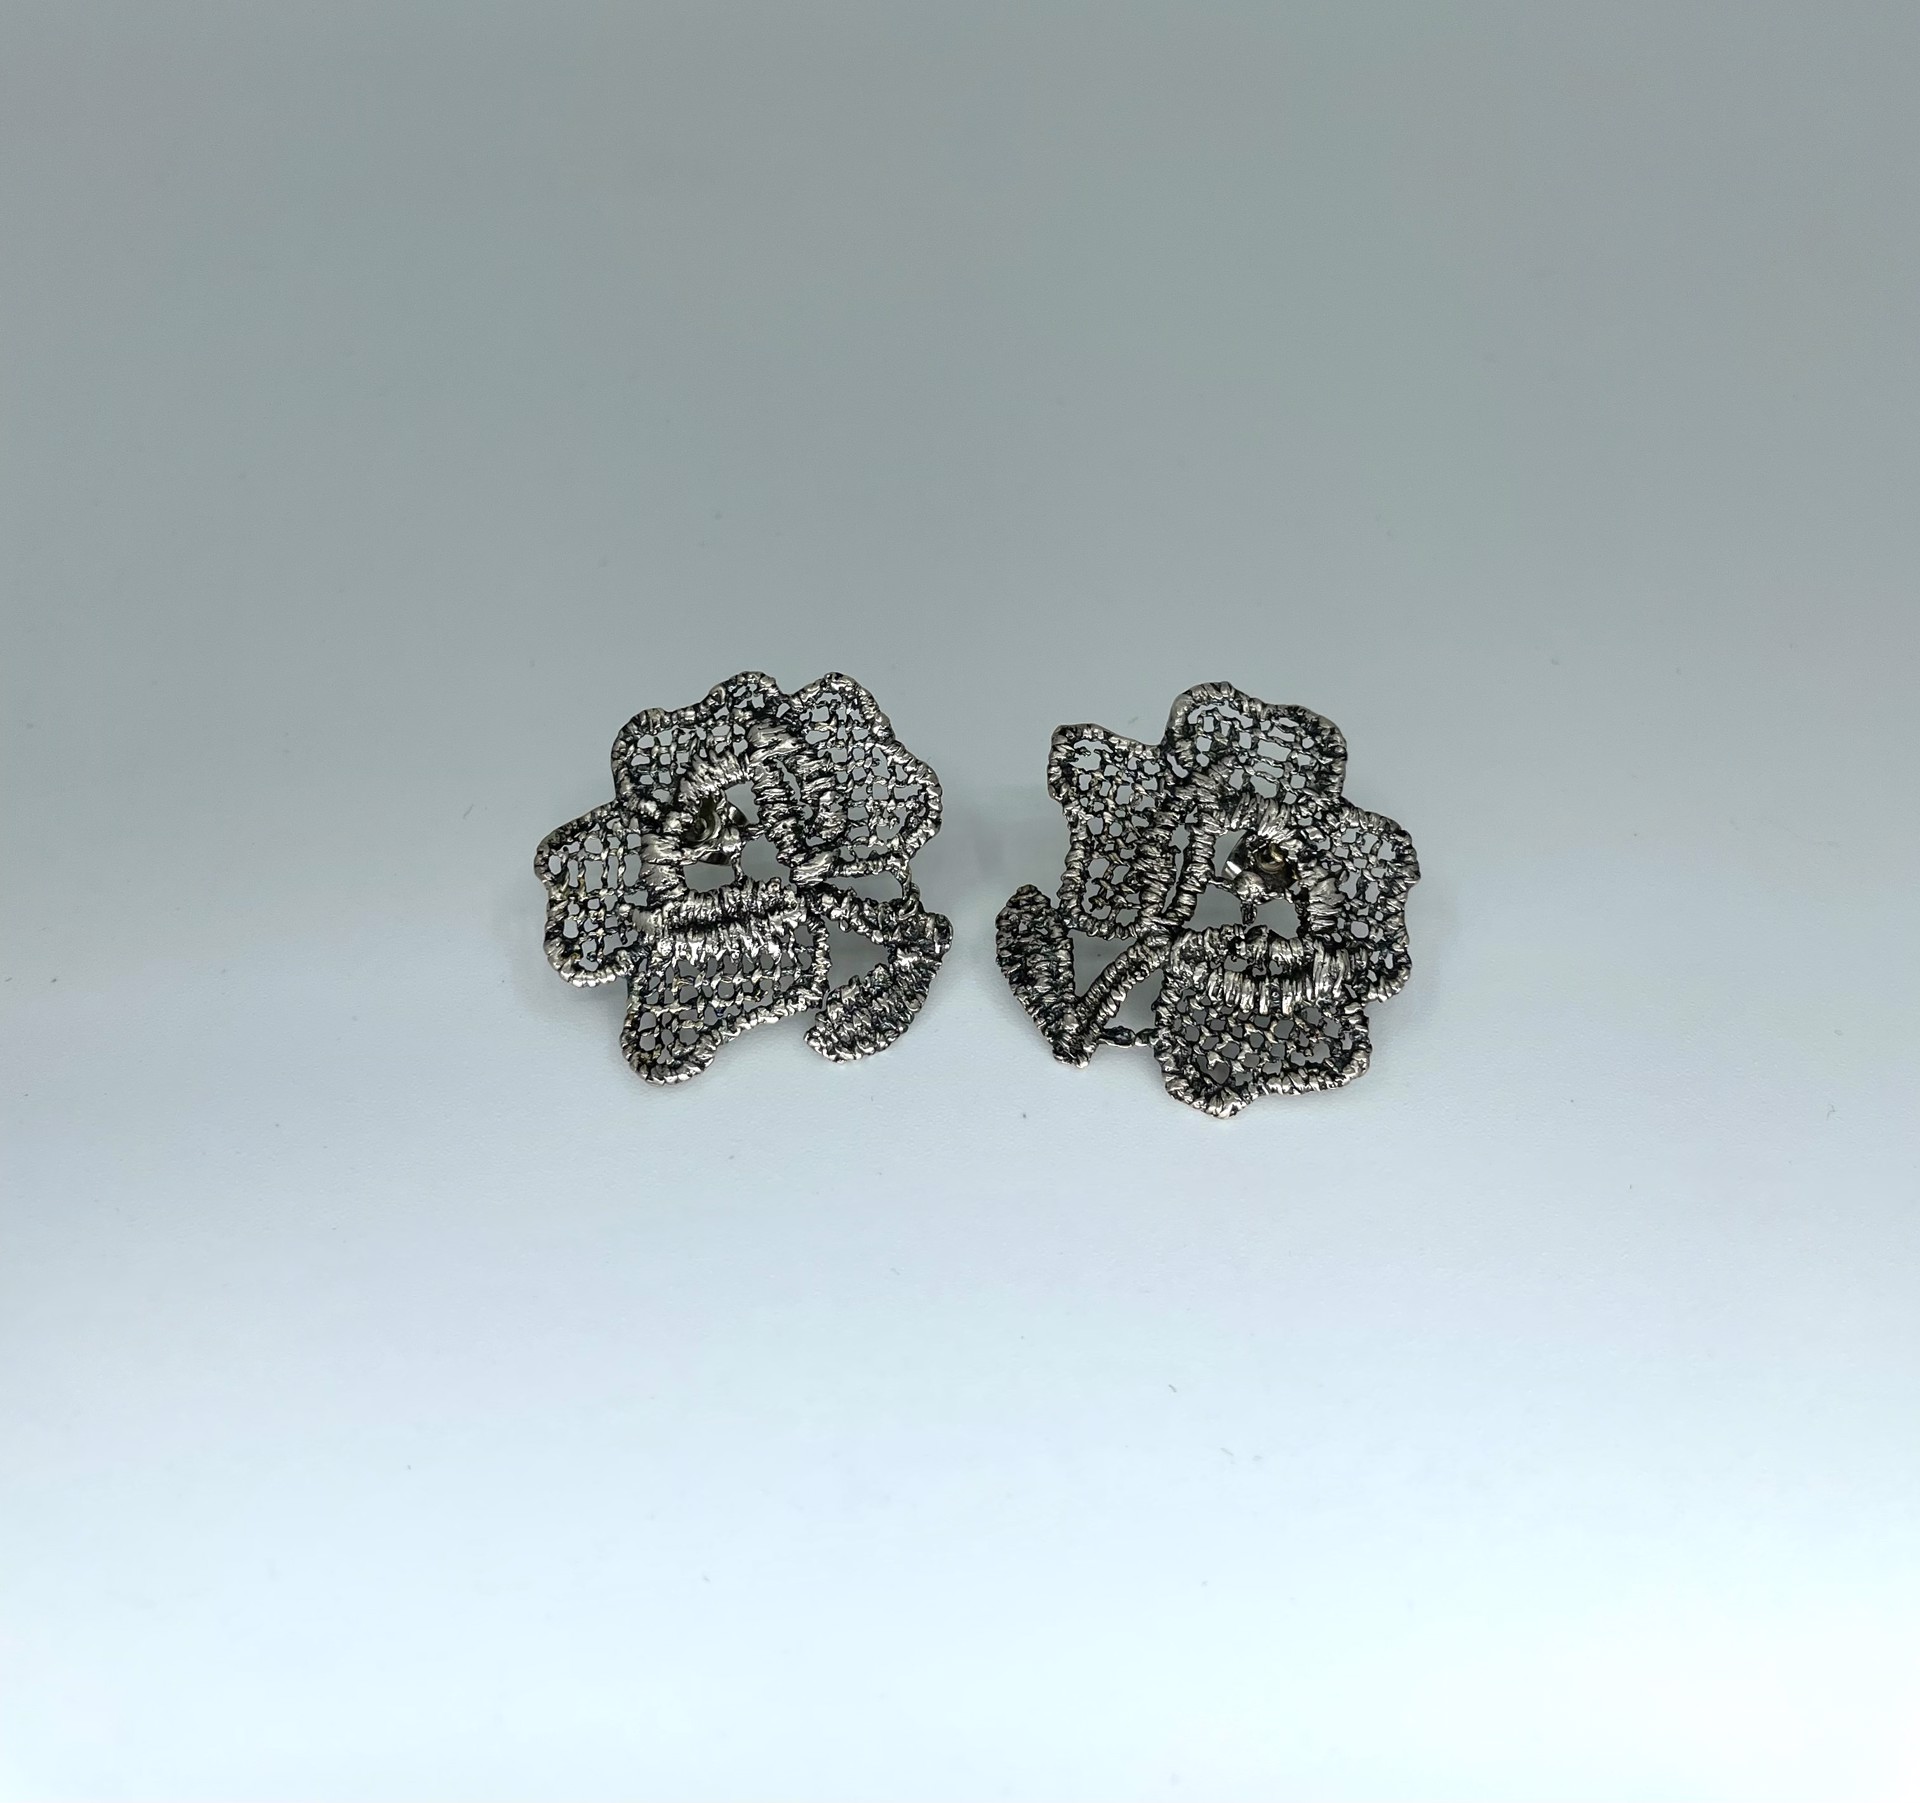 2466 Detailed Silver Flower Earrings by Beth Benowich